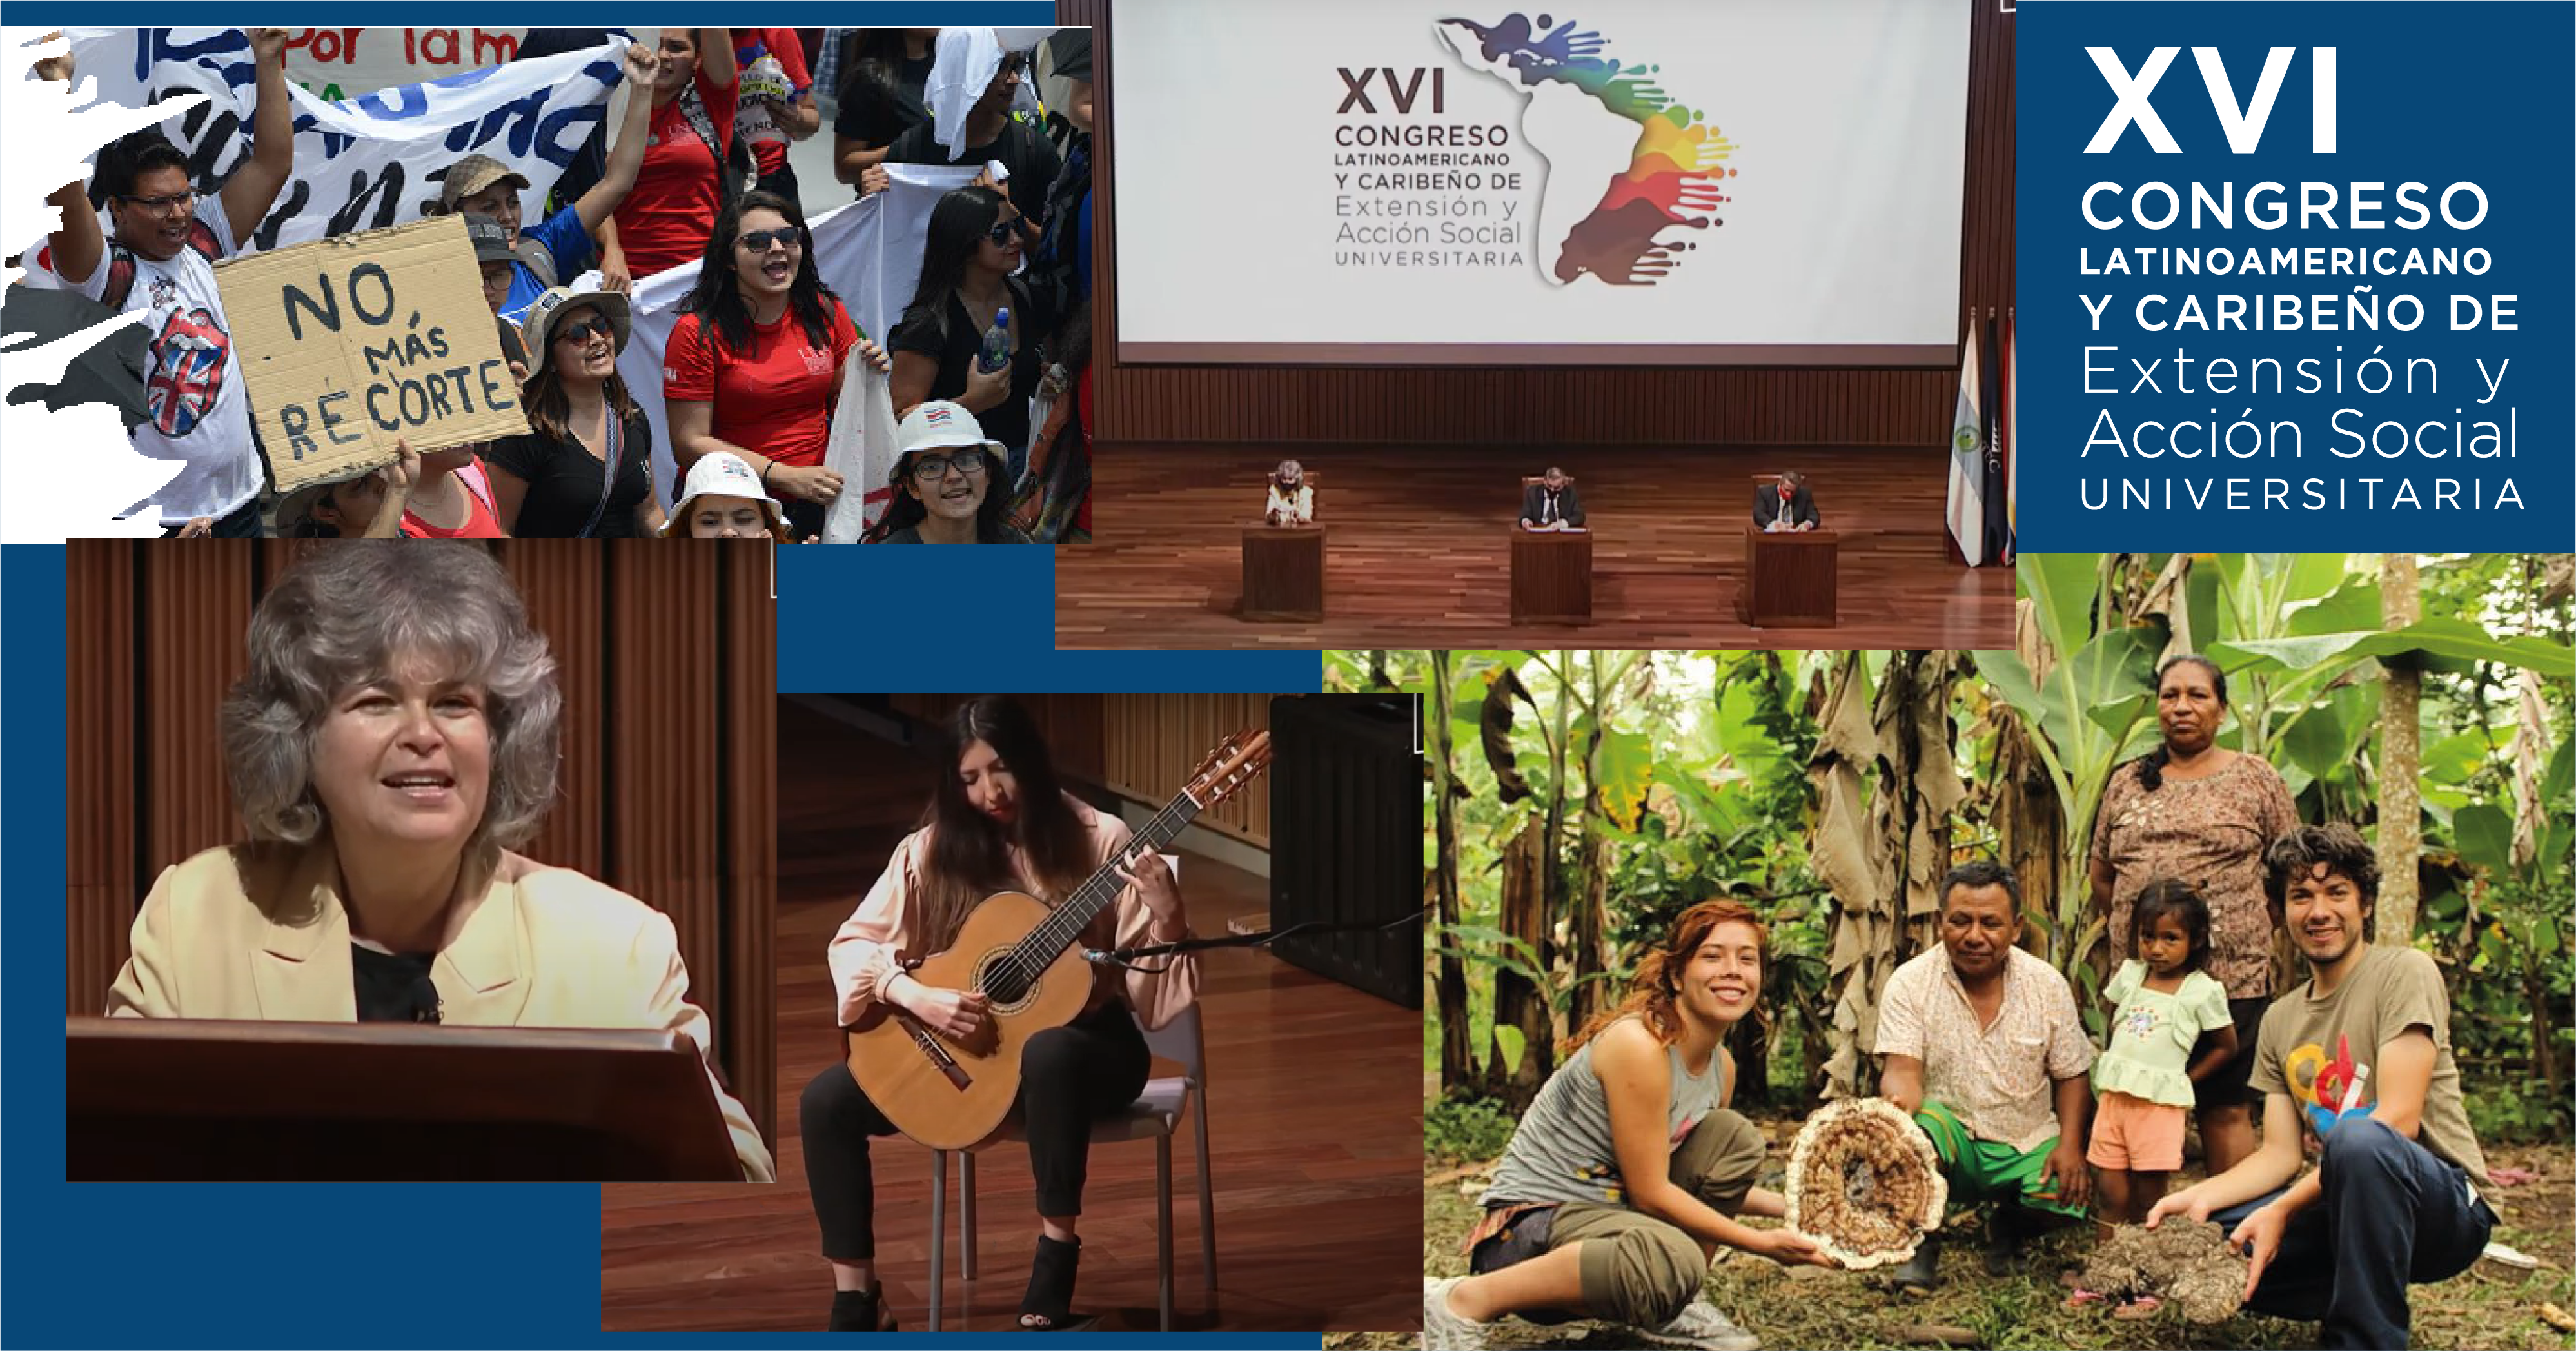 El Congreso se desarrolló del 26 al 29 de octubre, bajo la modalidad virtual, con la organización de Costa Rica, desde la Comisión de Vicerrectores de Extensión y Acción Social, del Consejo Nacional de Rectores (CONARE), y con el apoyo de la Unión Latinoamericana de Extensión Universitaria (ULEU).